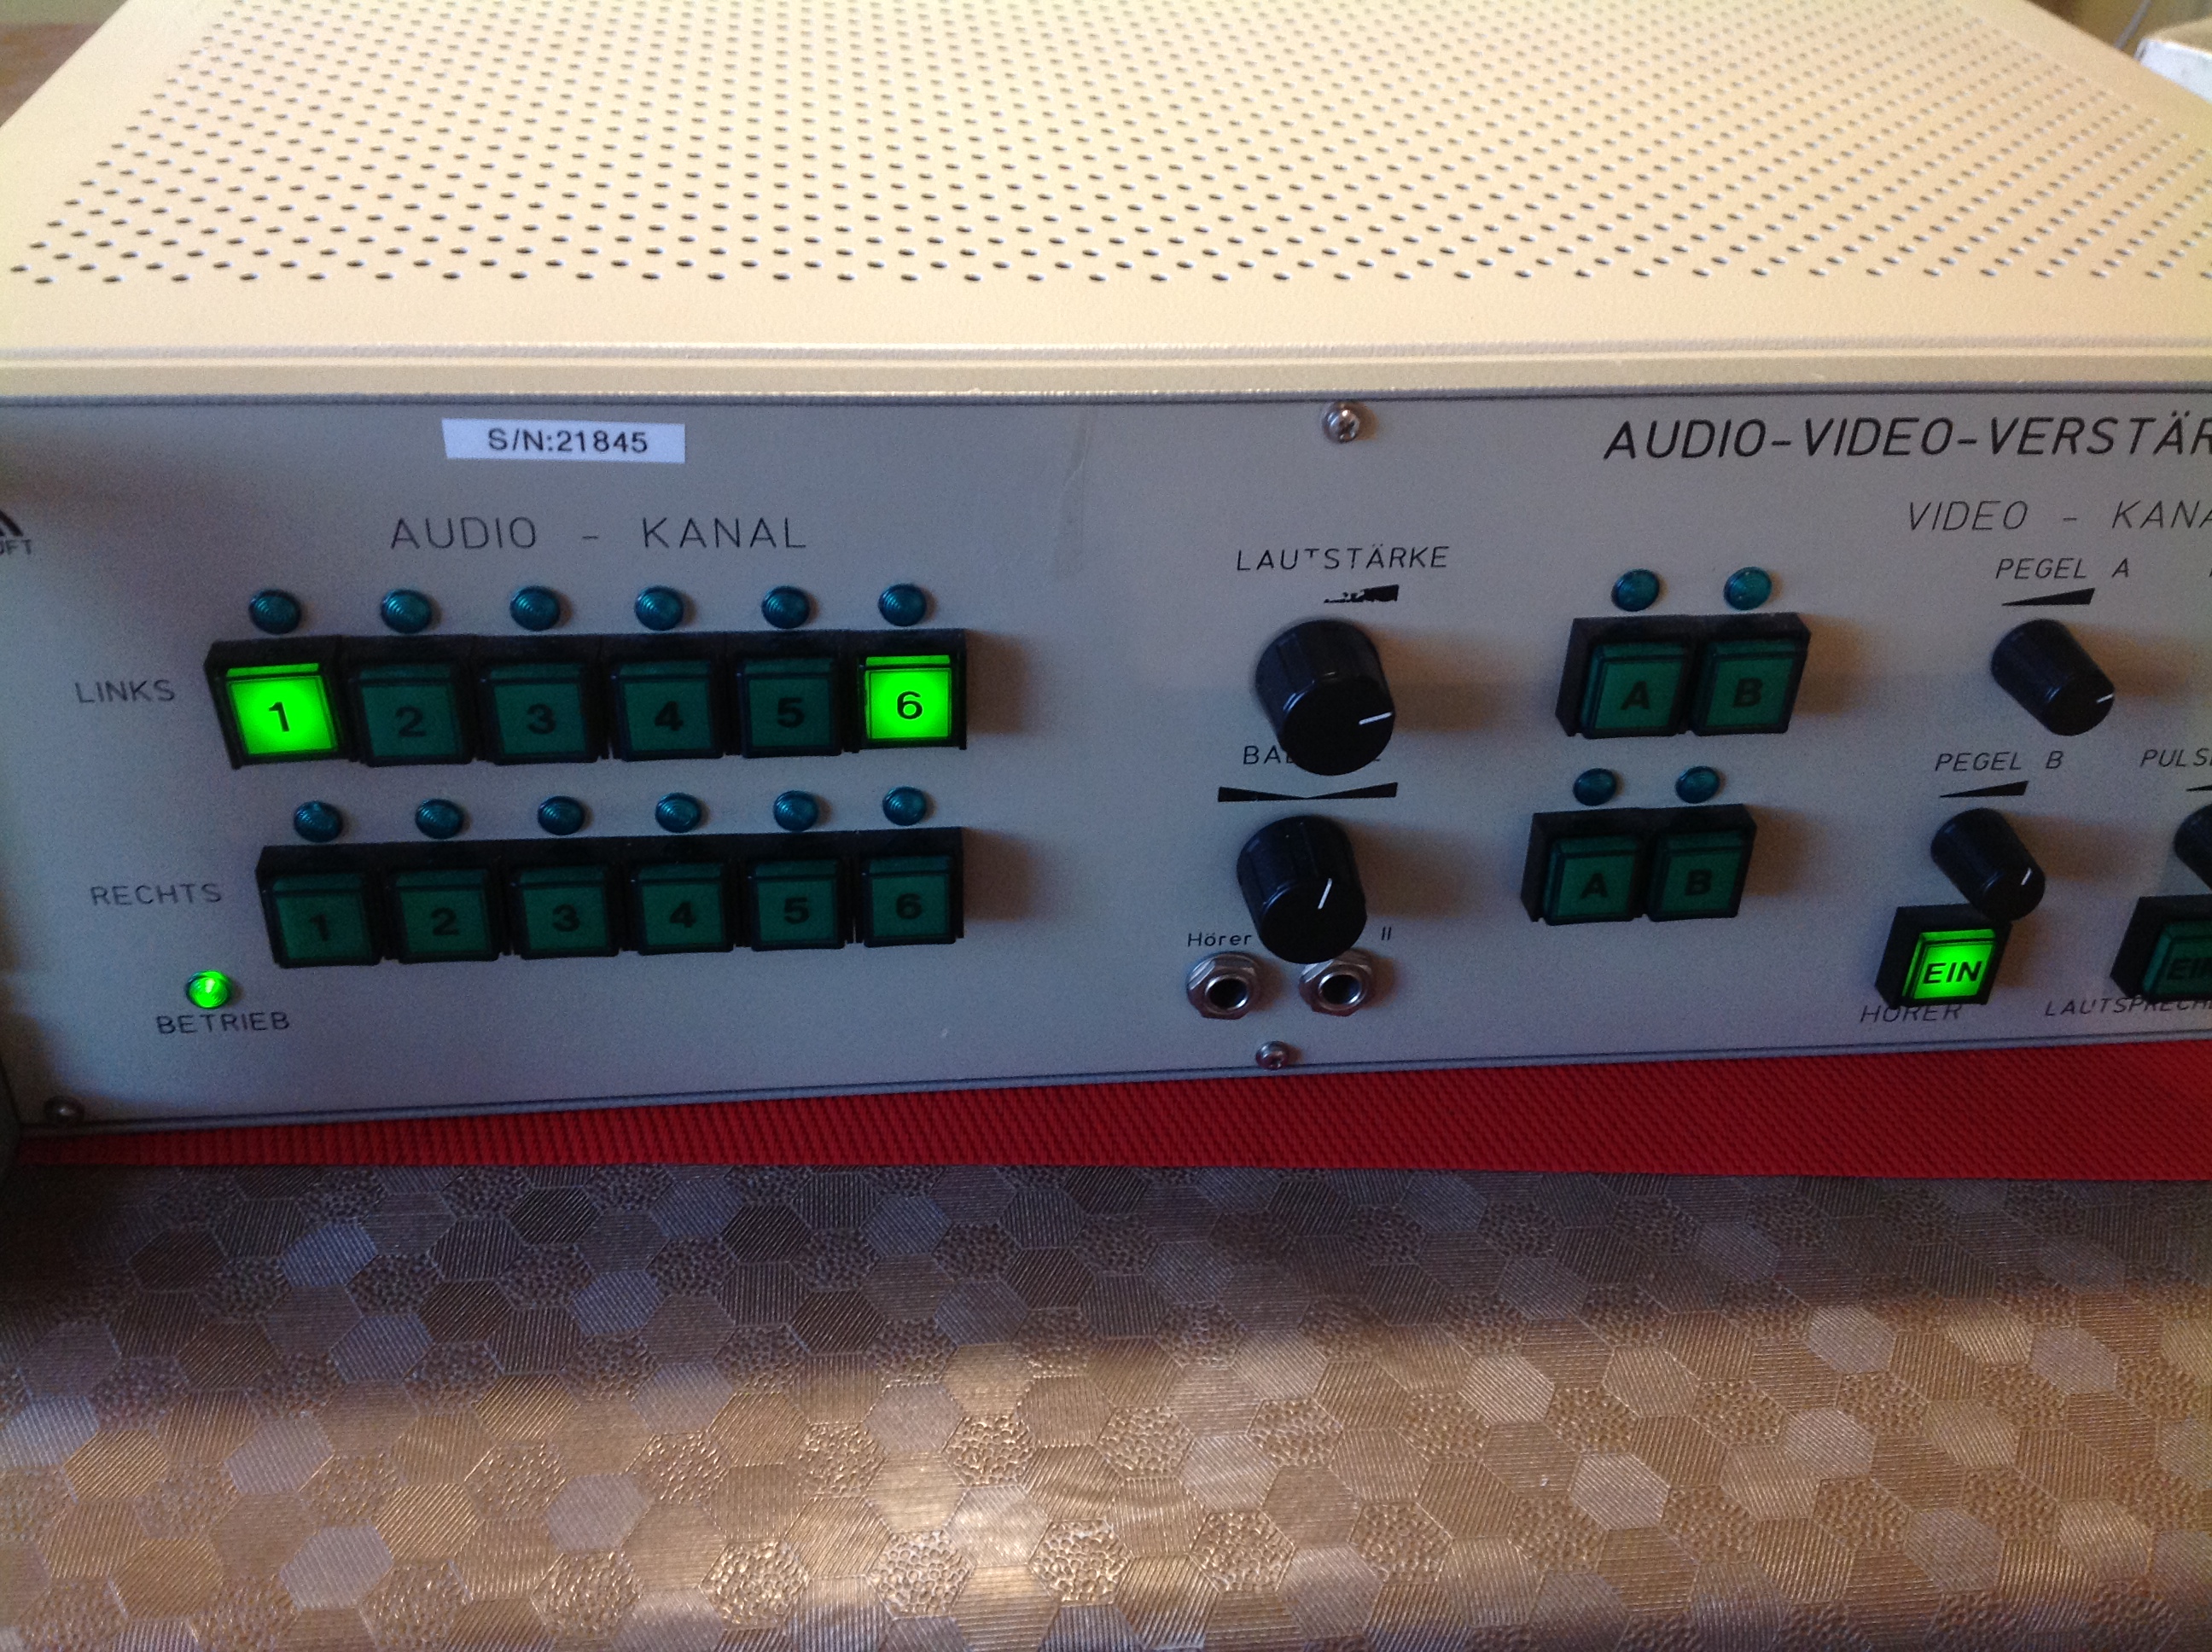 Audio-Video-Verstärker AVV-10